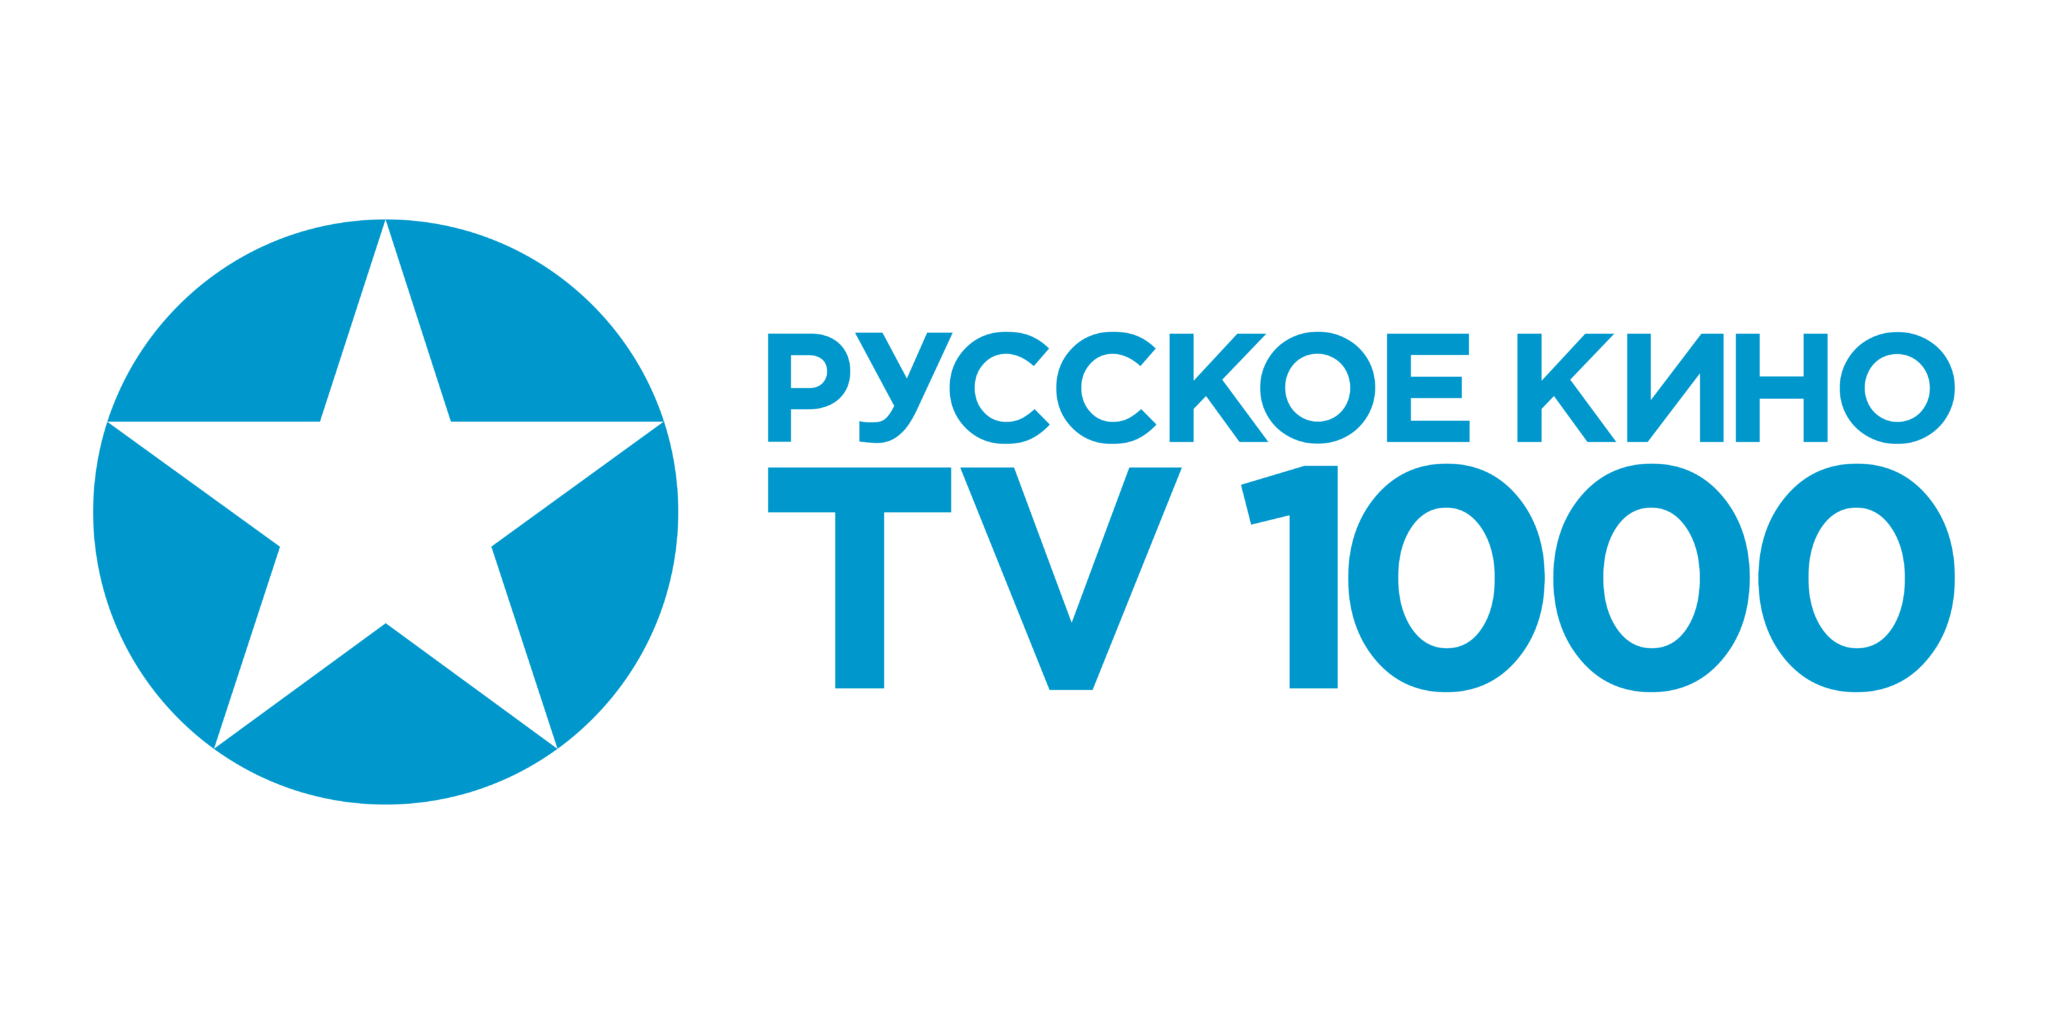 Канал тв1000 хорошего качества. Логотип телеканала TV 1000.